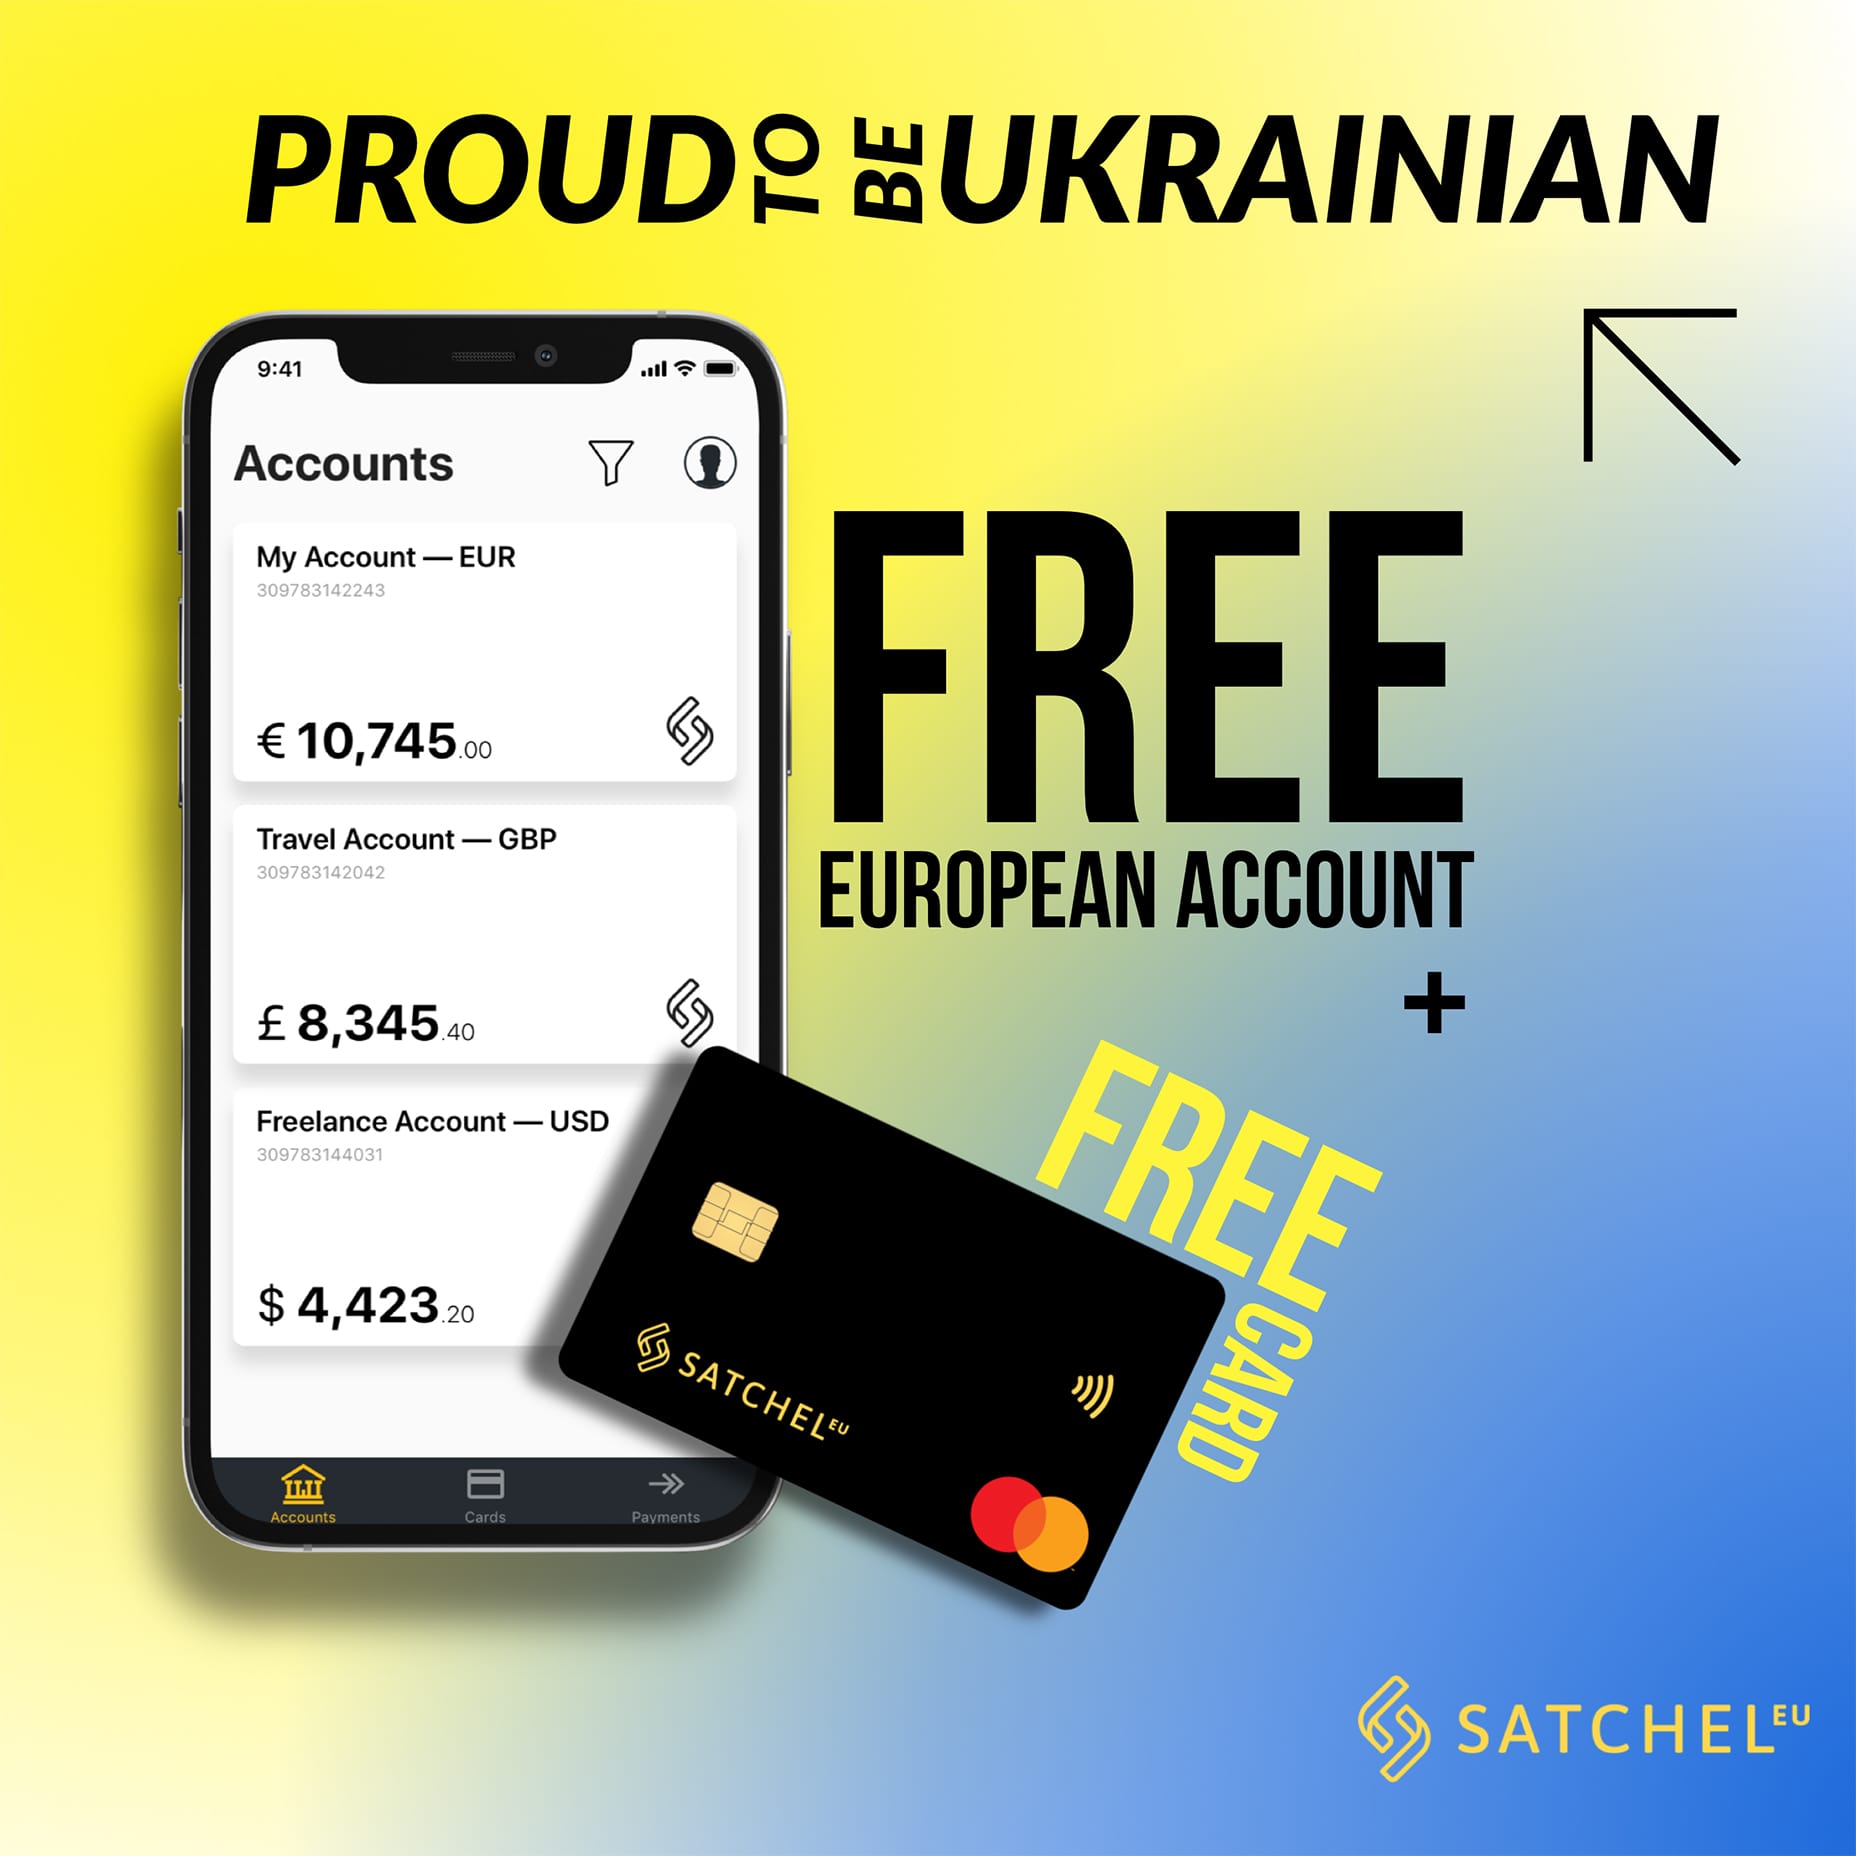 How can Ukrainian citizens open an account with Satchel.eu?